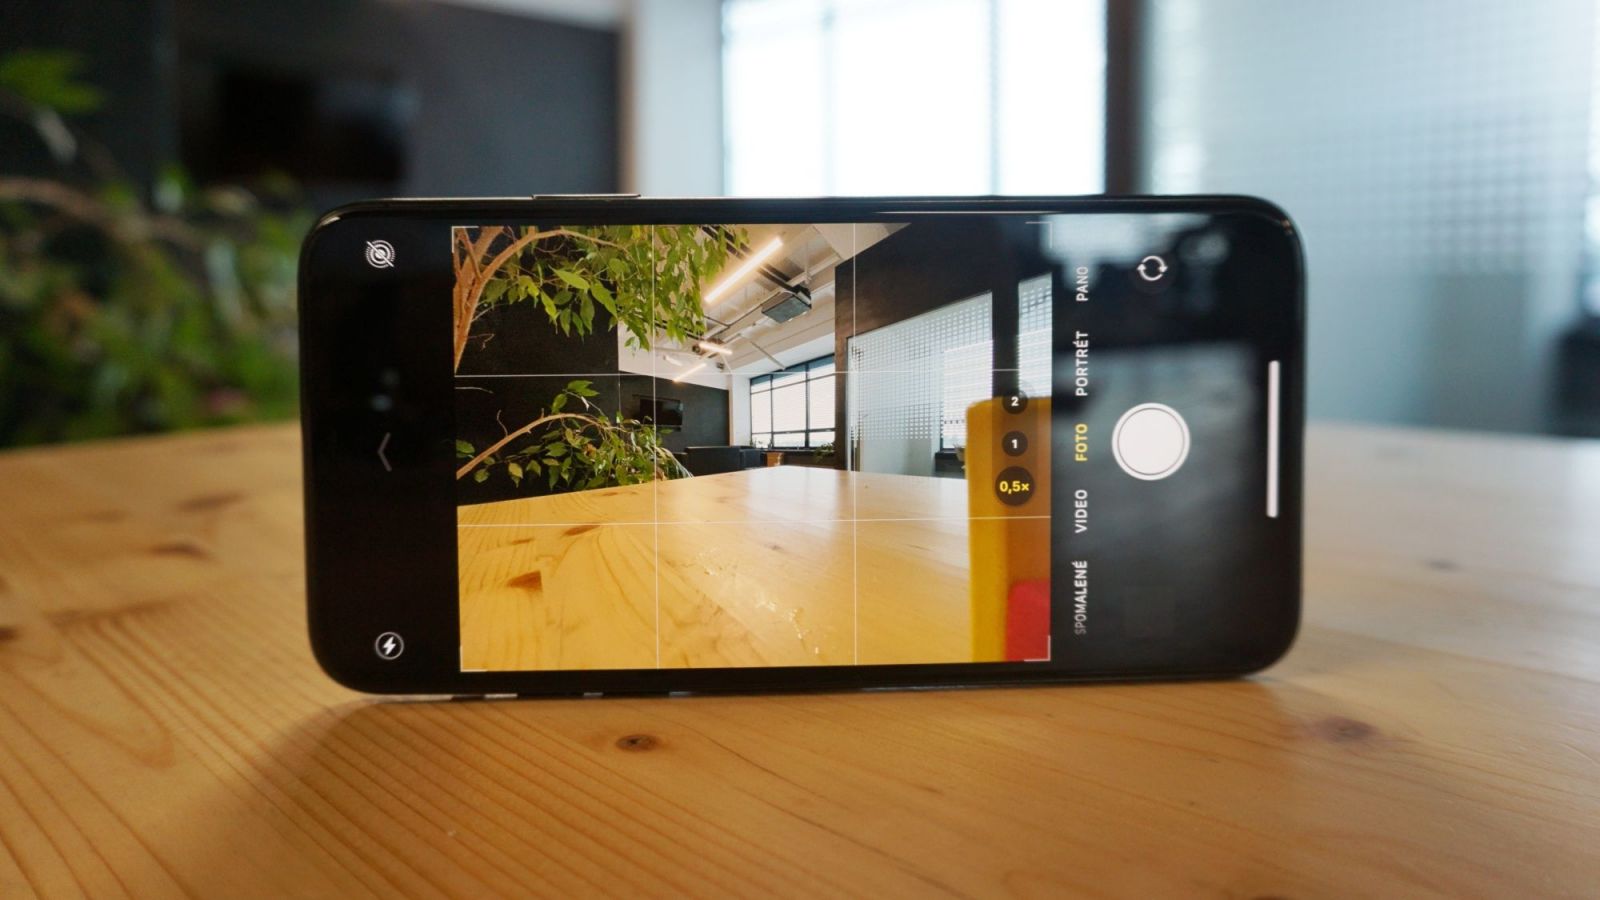 iPhone 11 Pro Max: Toto je najlepší smartfón, aký si môžeš kúpiť (Recenzia)